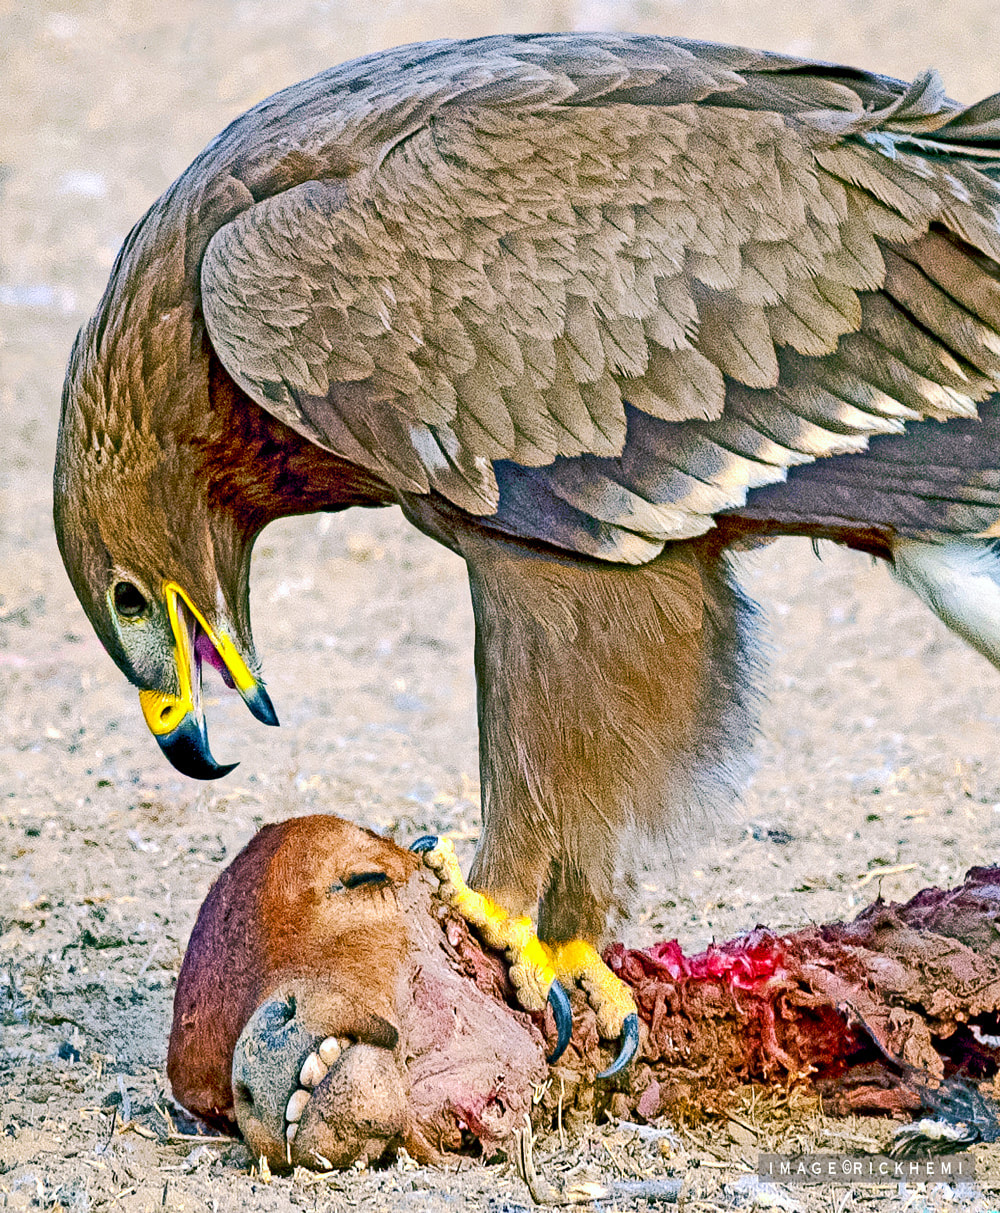 offshore overland travel, wildlife birdlife photography, steppe eagle, DSLR image by Rick Hemi